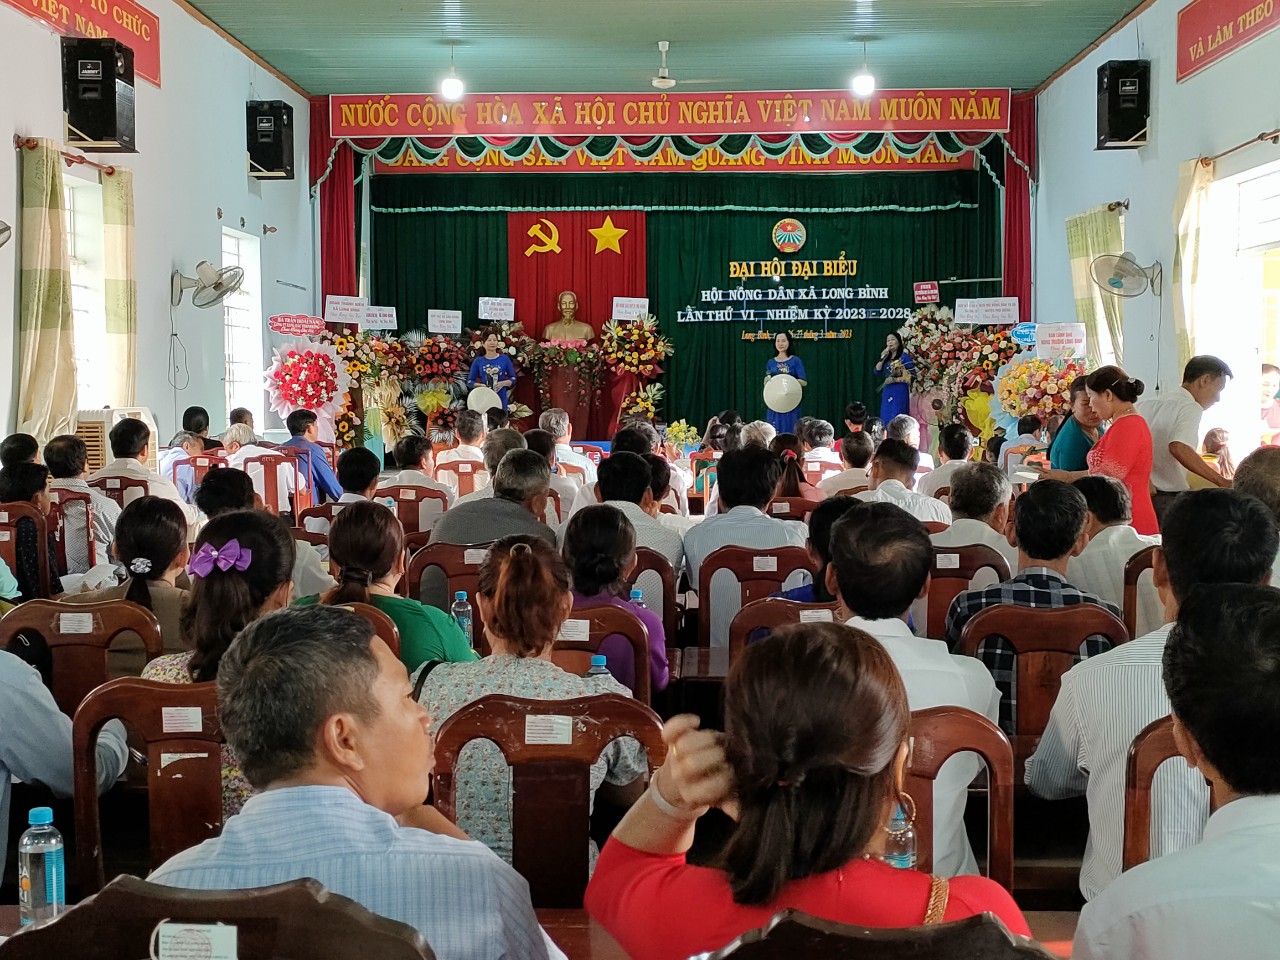 Đại hội đại biểu Hội Nông dân xã Long Bình lần thứ VI nhiệm kỳ 2023 – 2028